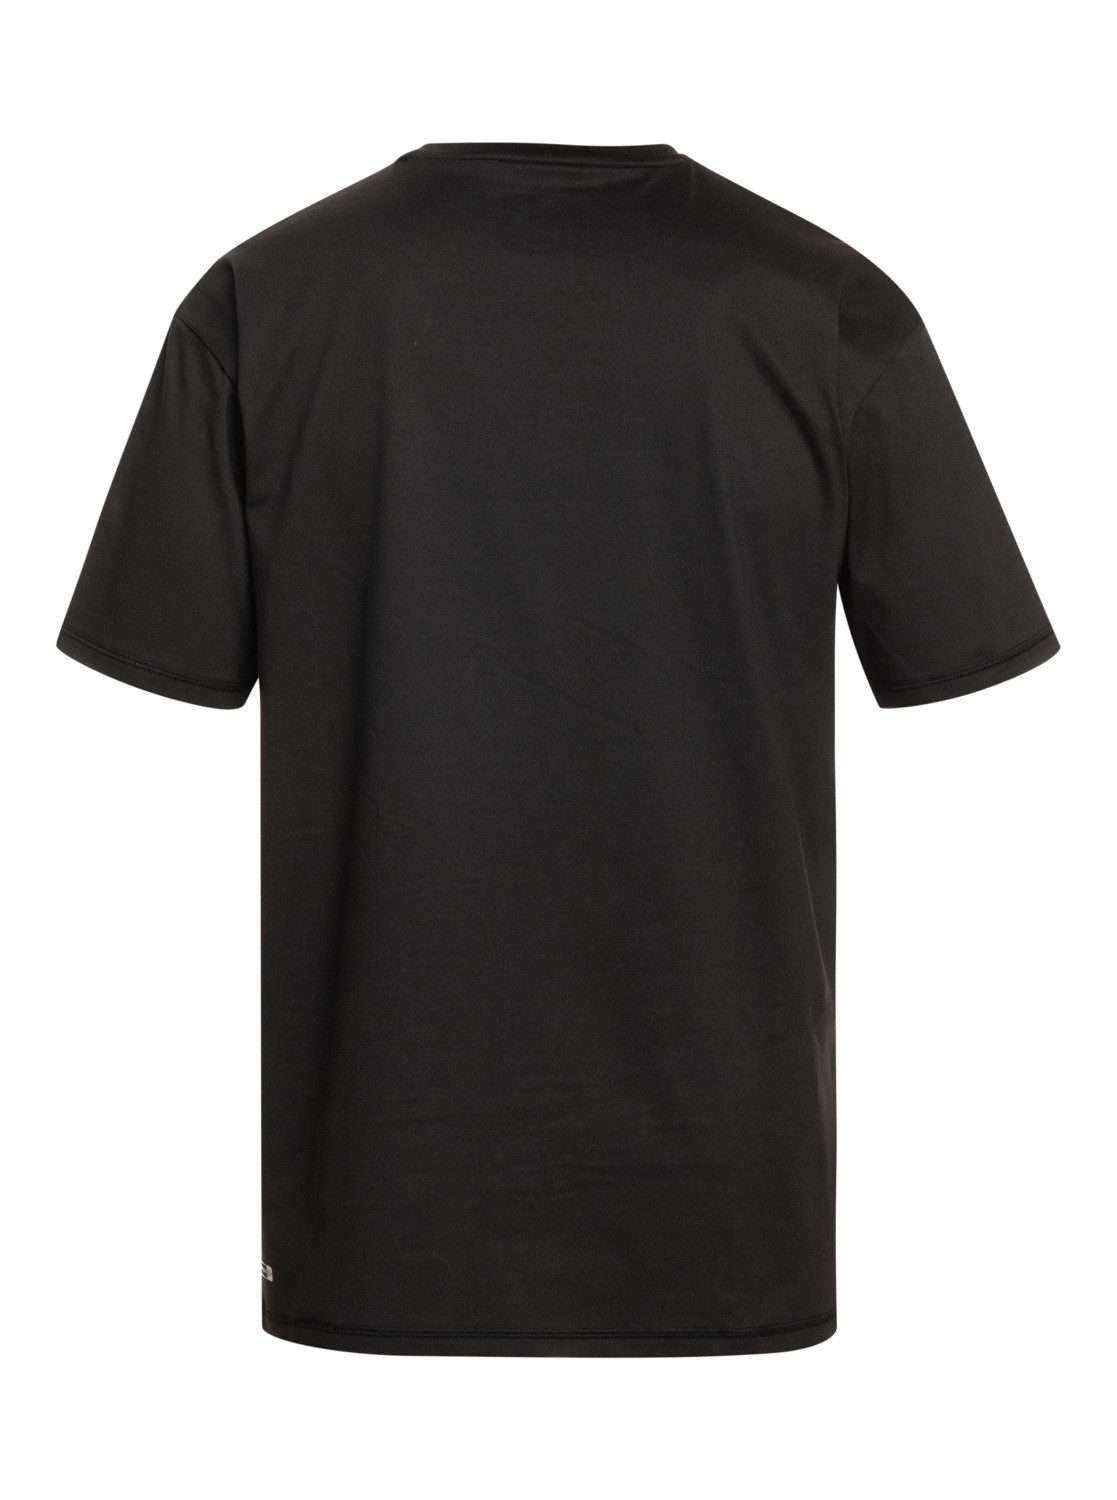 Solid Black Shirt Quiksilver Streak Neopren